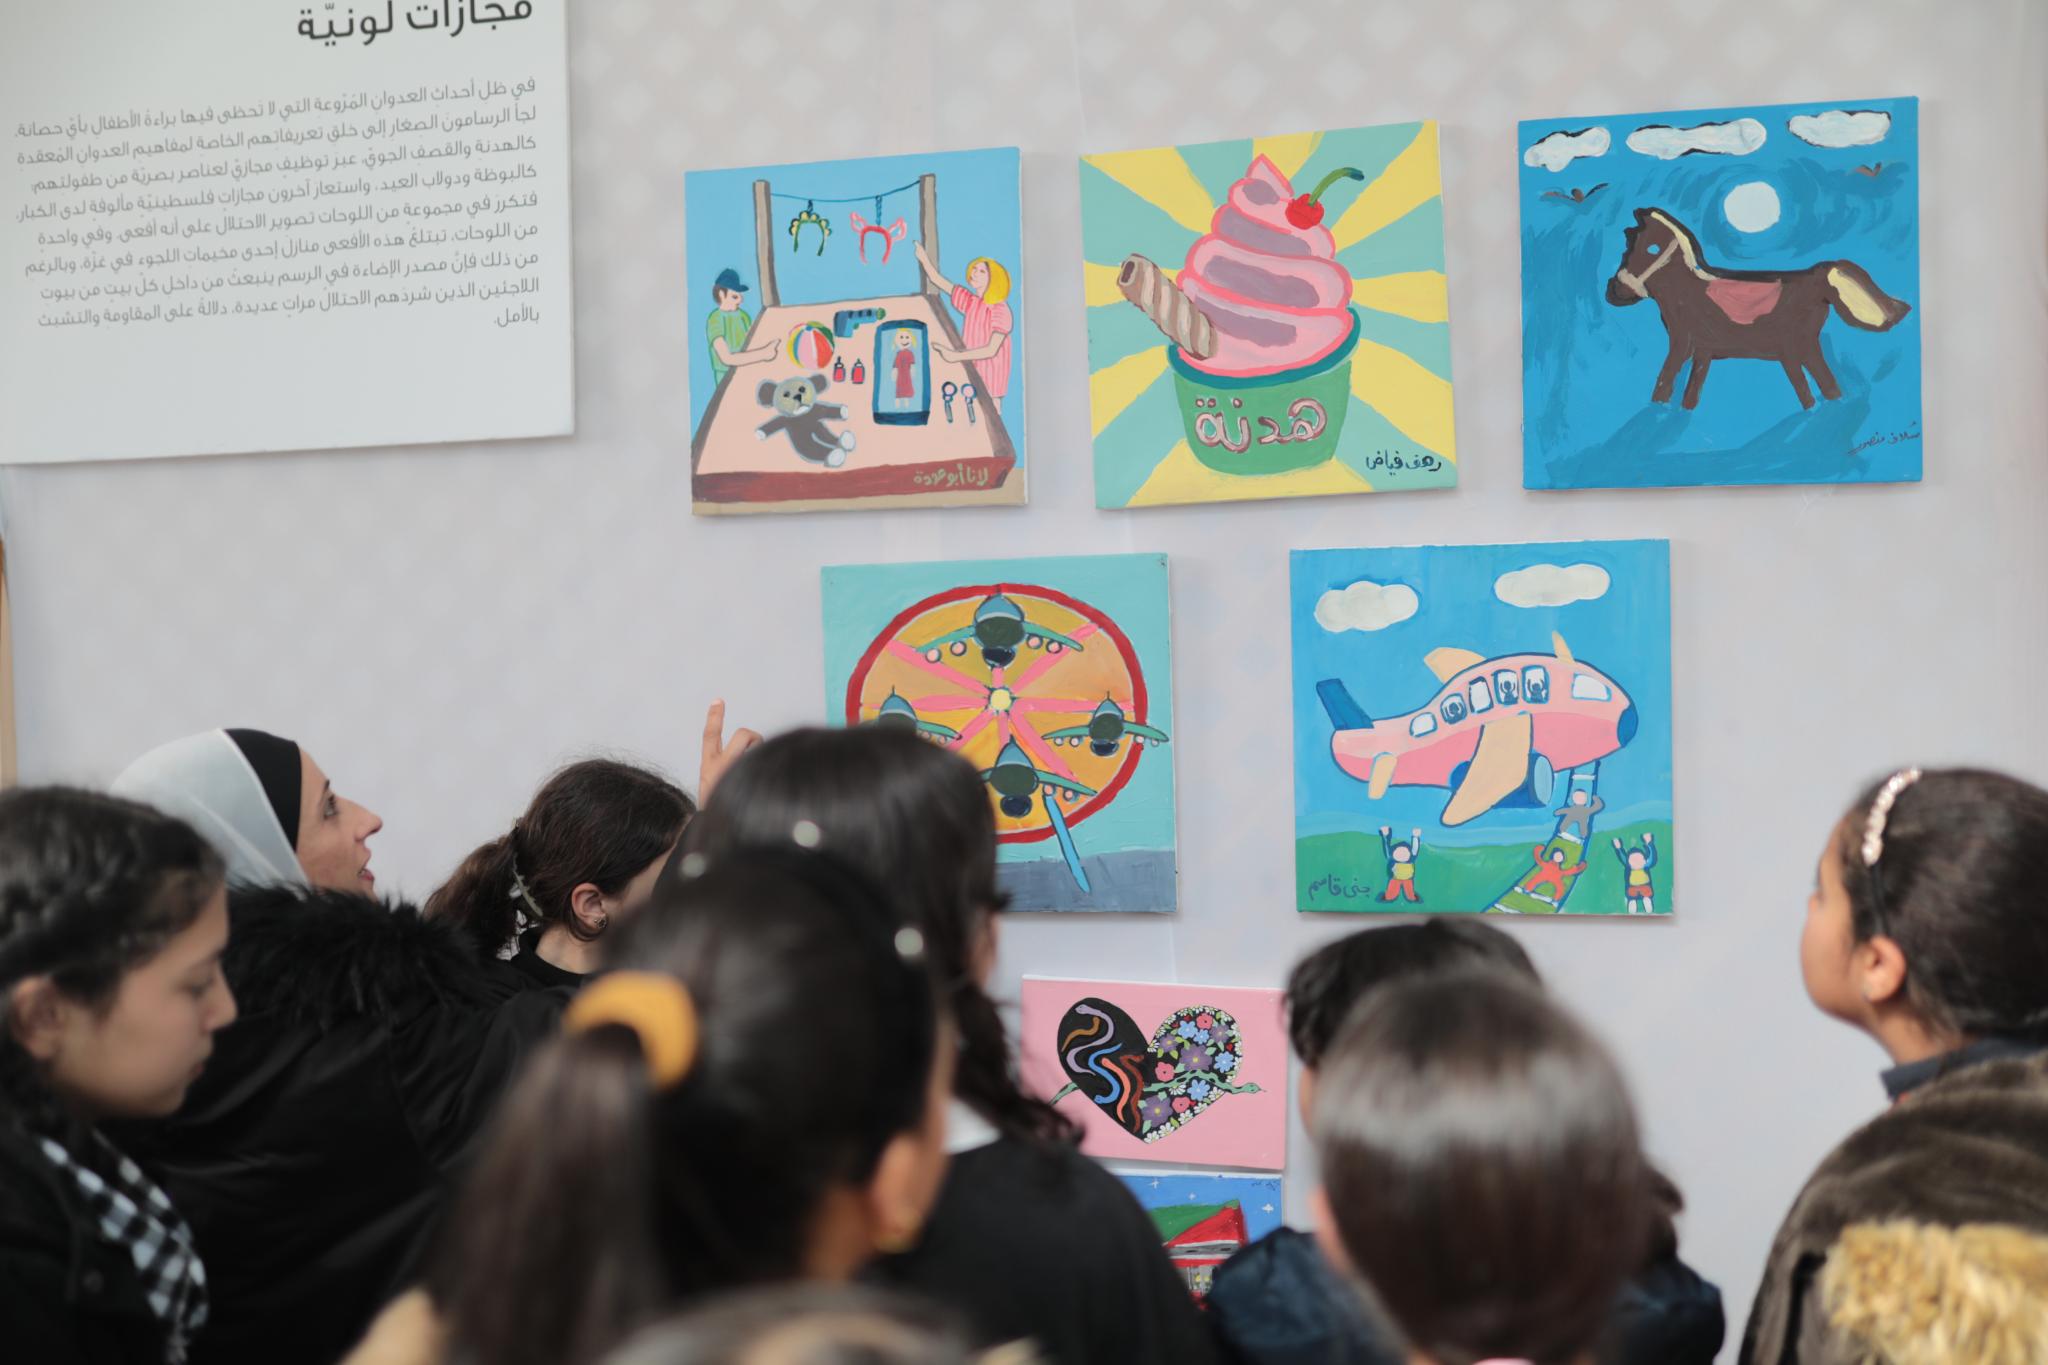 مركز حسيب الصباغ للتميز في الجامعة ينظم معرض رسومات بعنوان "لن نعتاد المشهد"